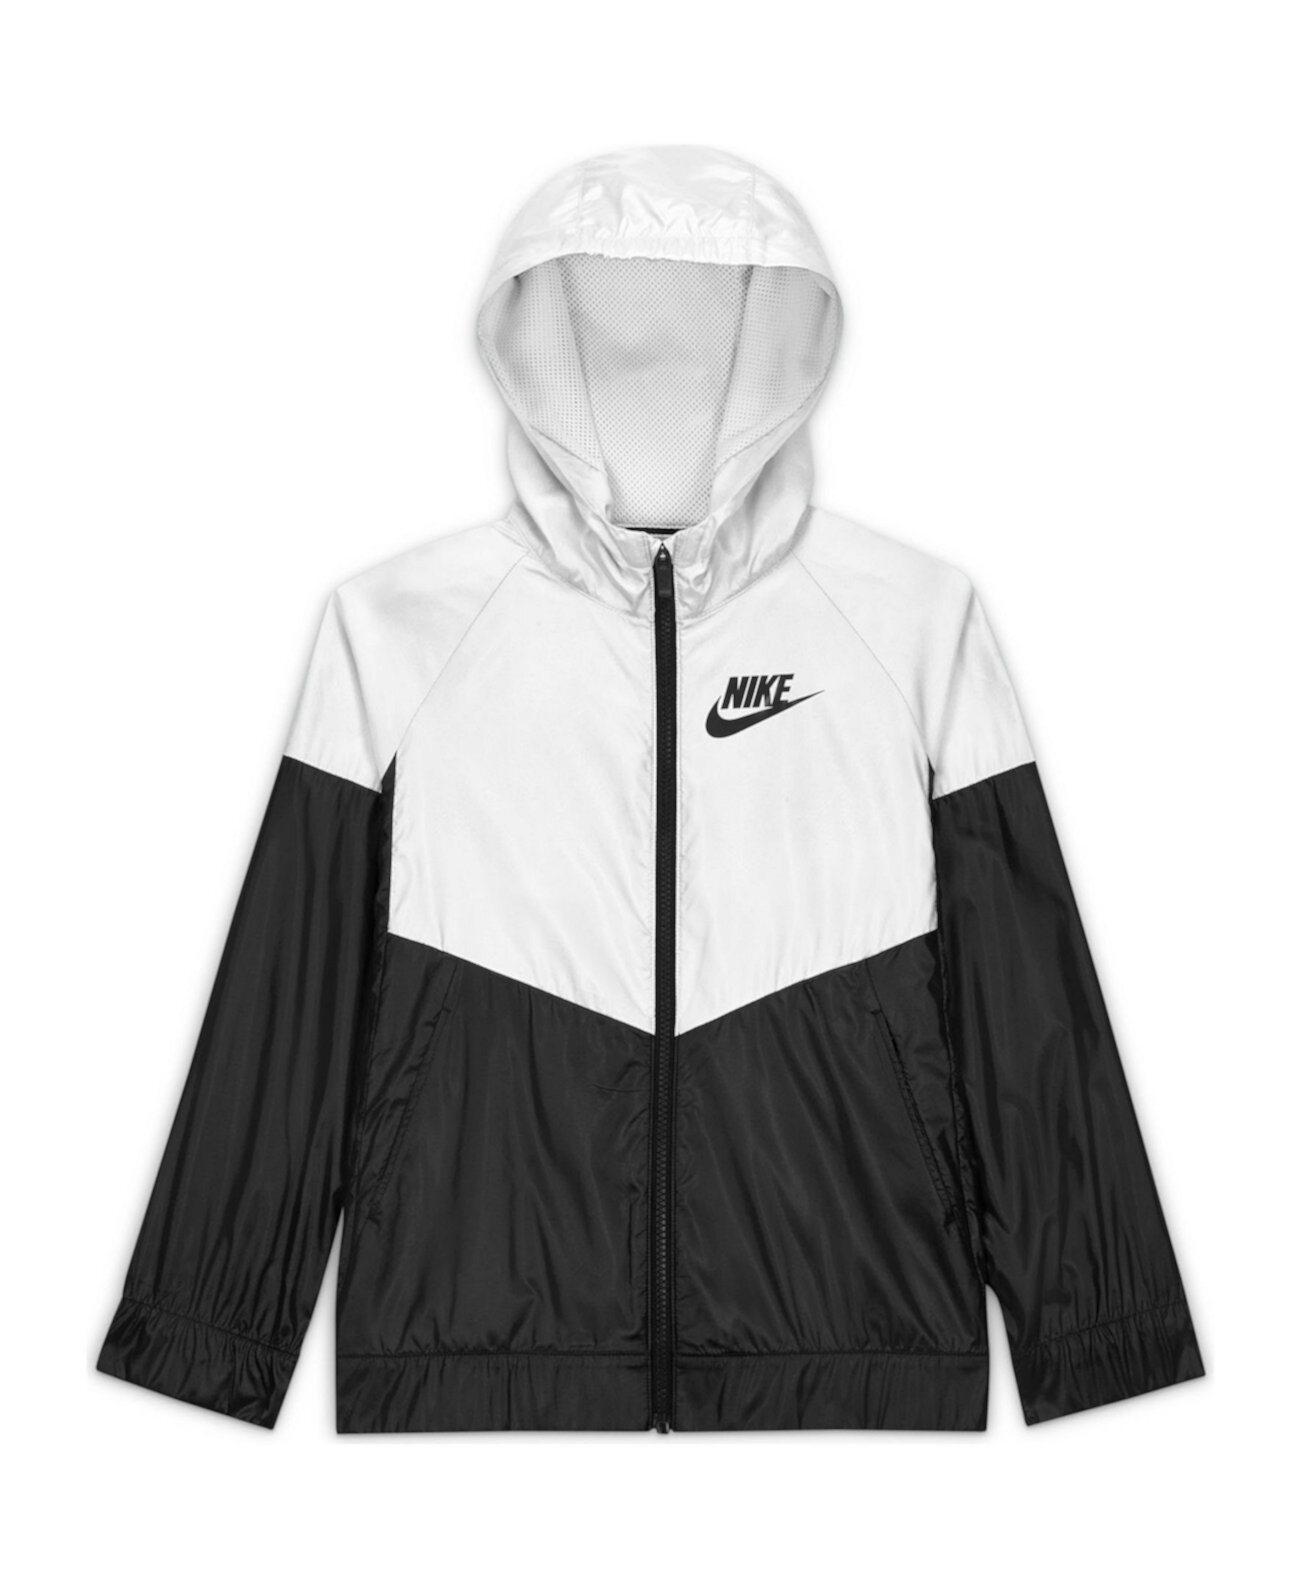 Спортивная куртка Windrunner для больших девочек увеличенного размера Nike